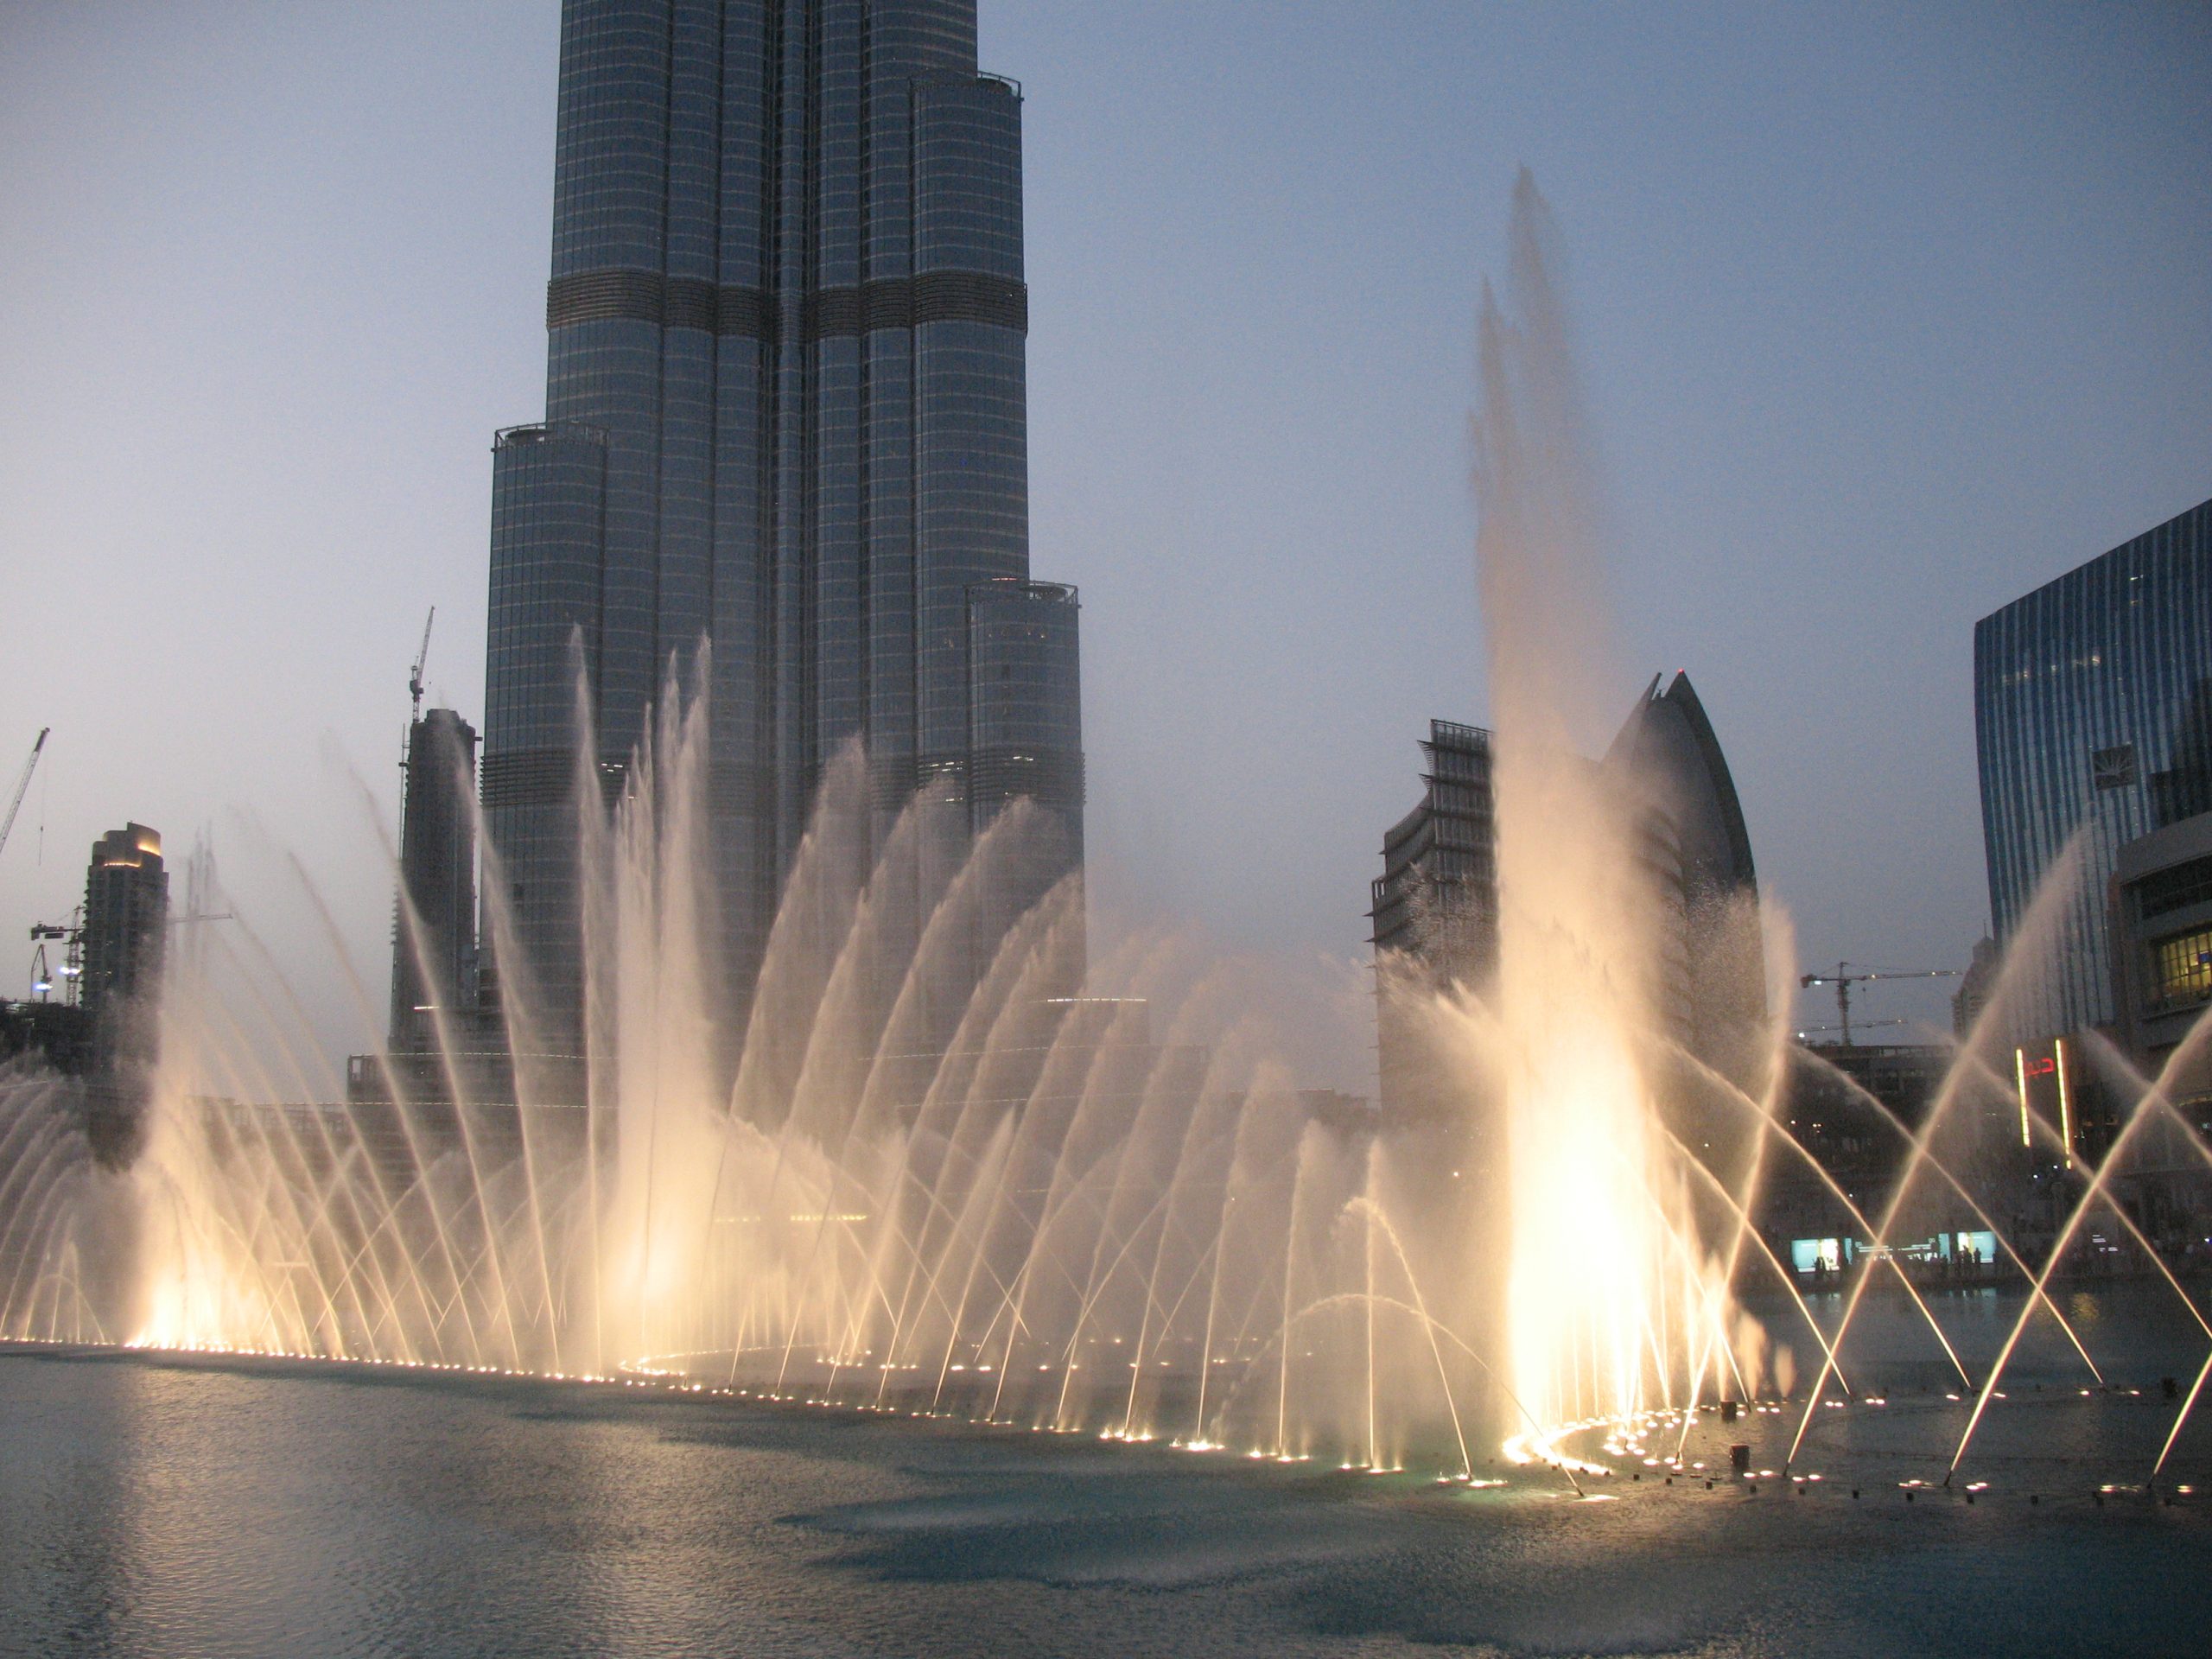 Dubai Fountain scaled